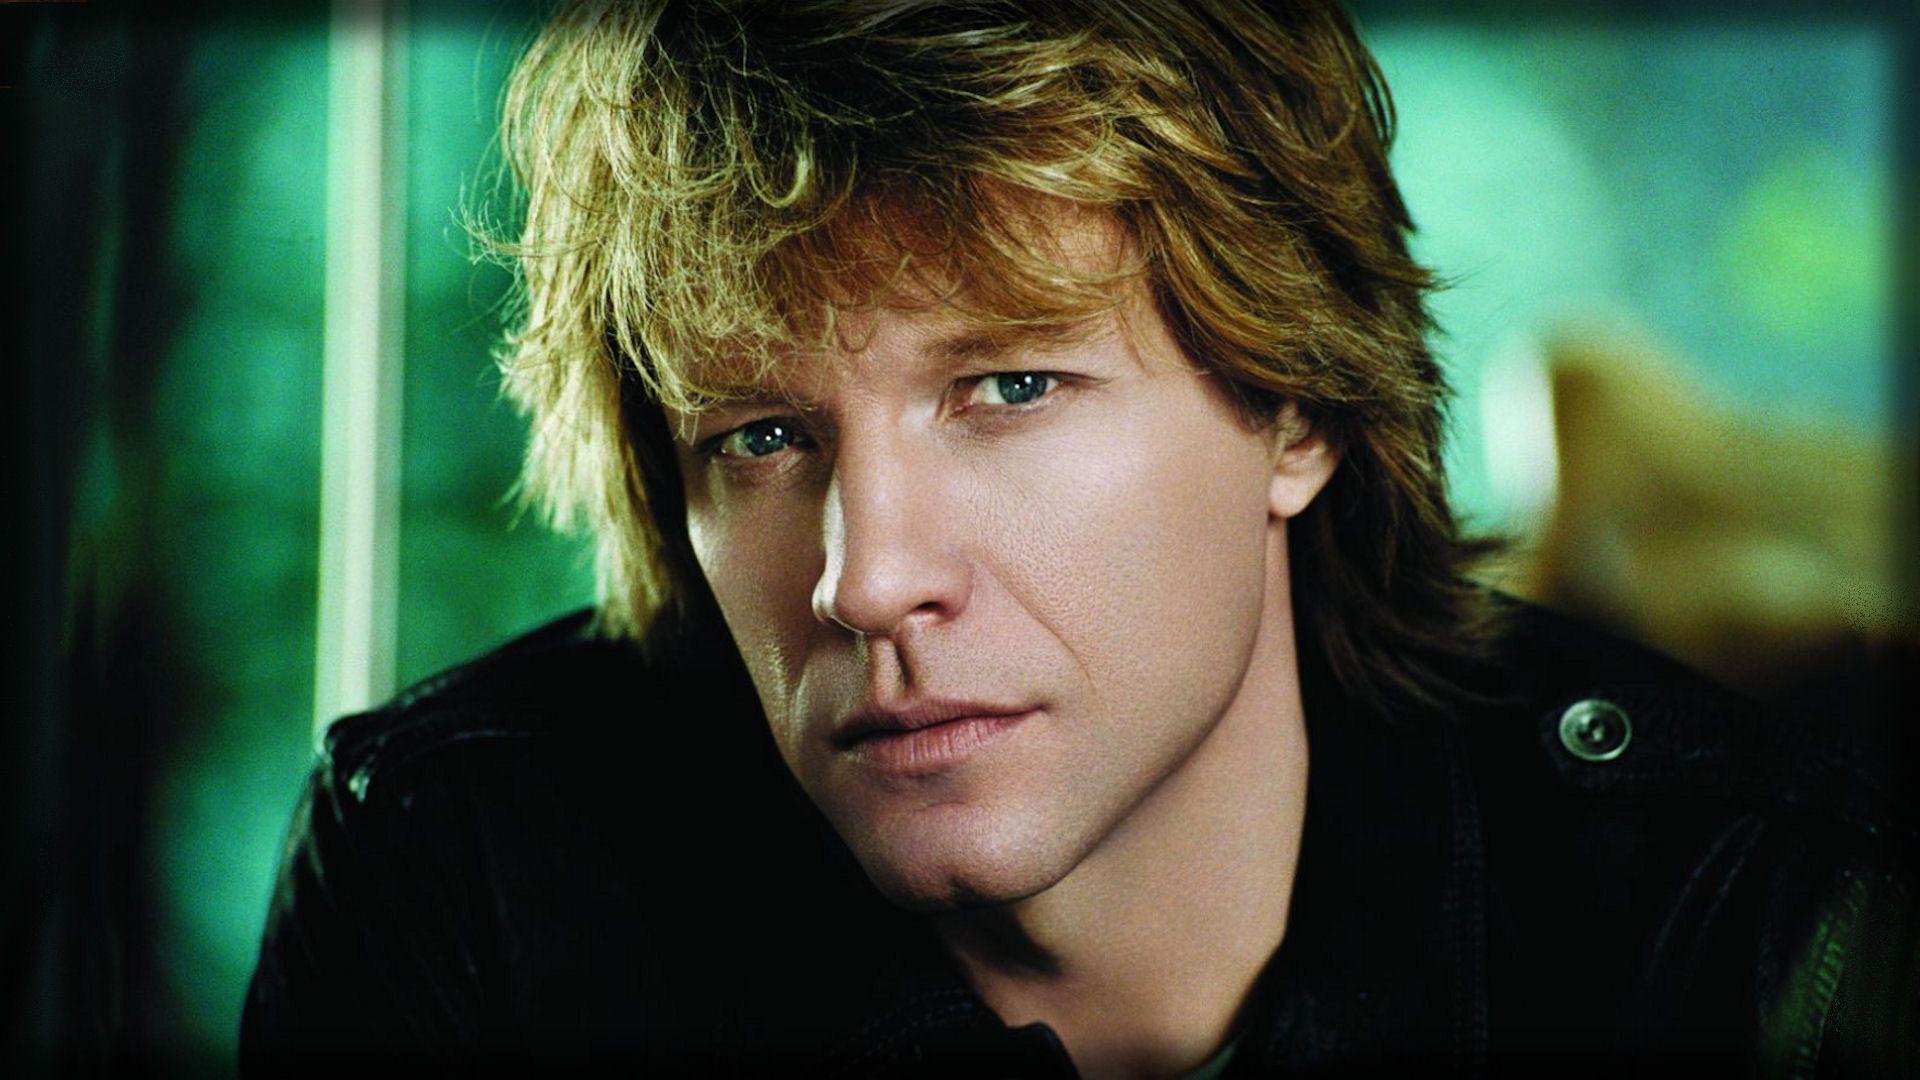 Jon Bon Jovi Wallpaper Wide or HD. Male Celebrities Wallpaper